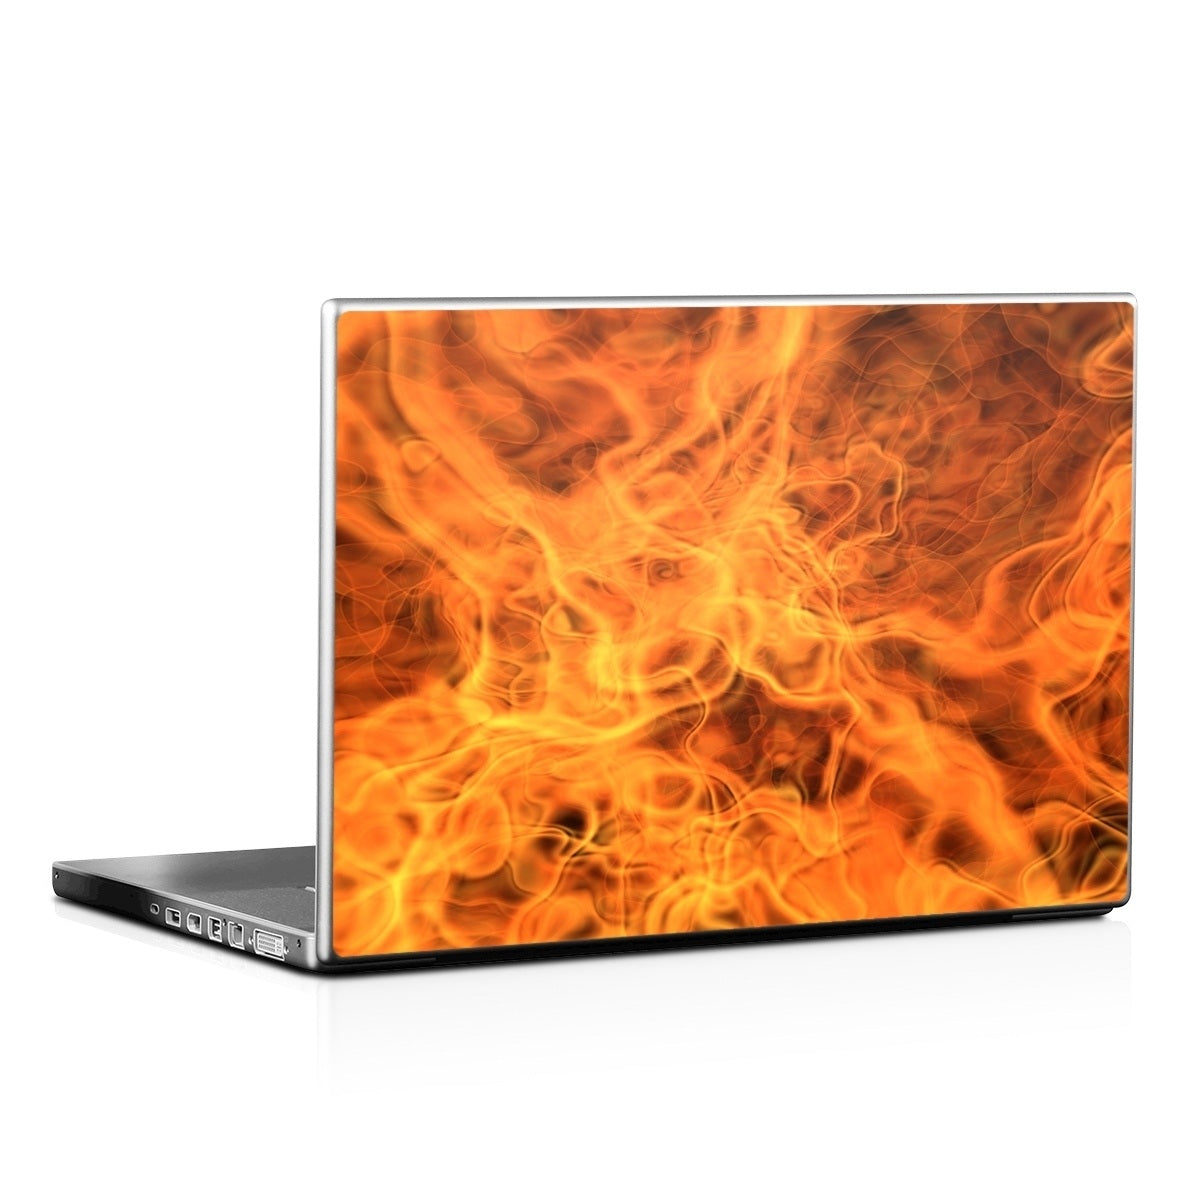 Combustion - Laptop Lid Skin